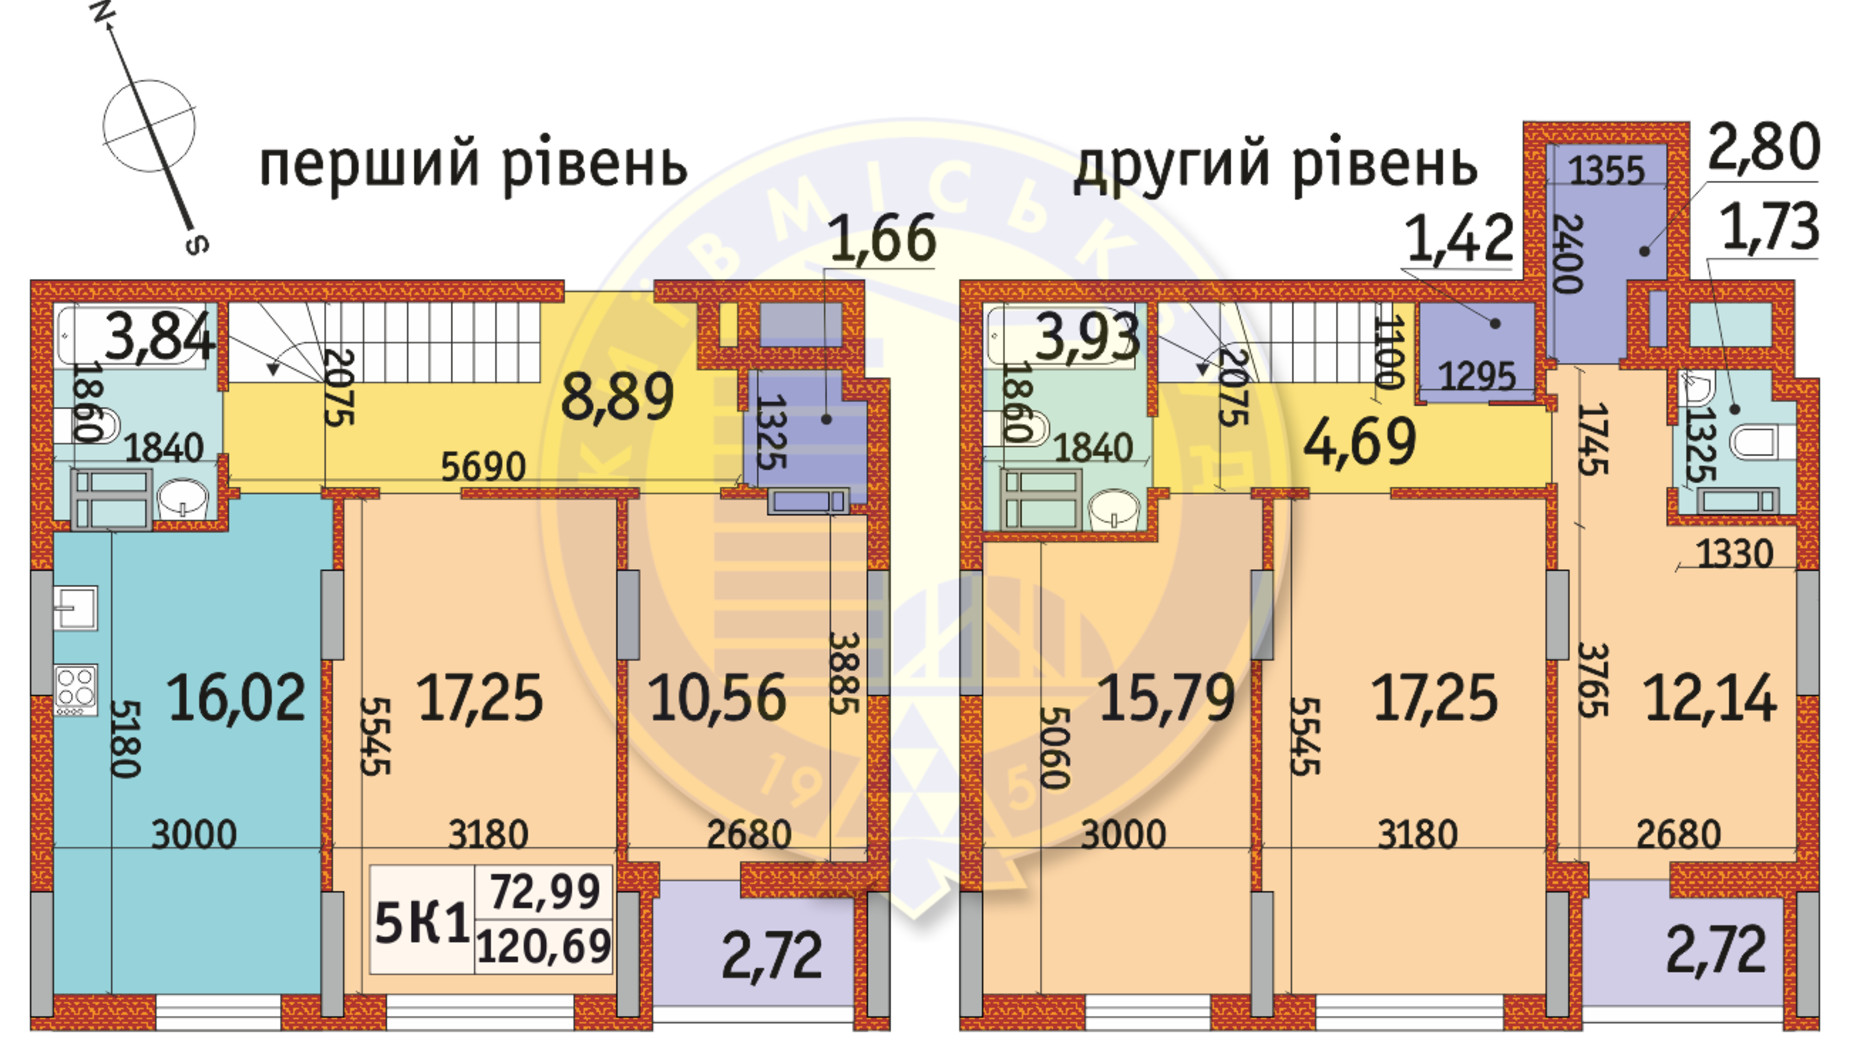 Планування багато­рівневої квартири в ЖК Отрада 120.69 м², фото 146643